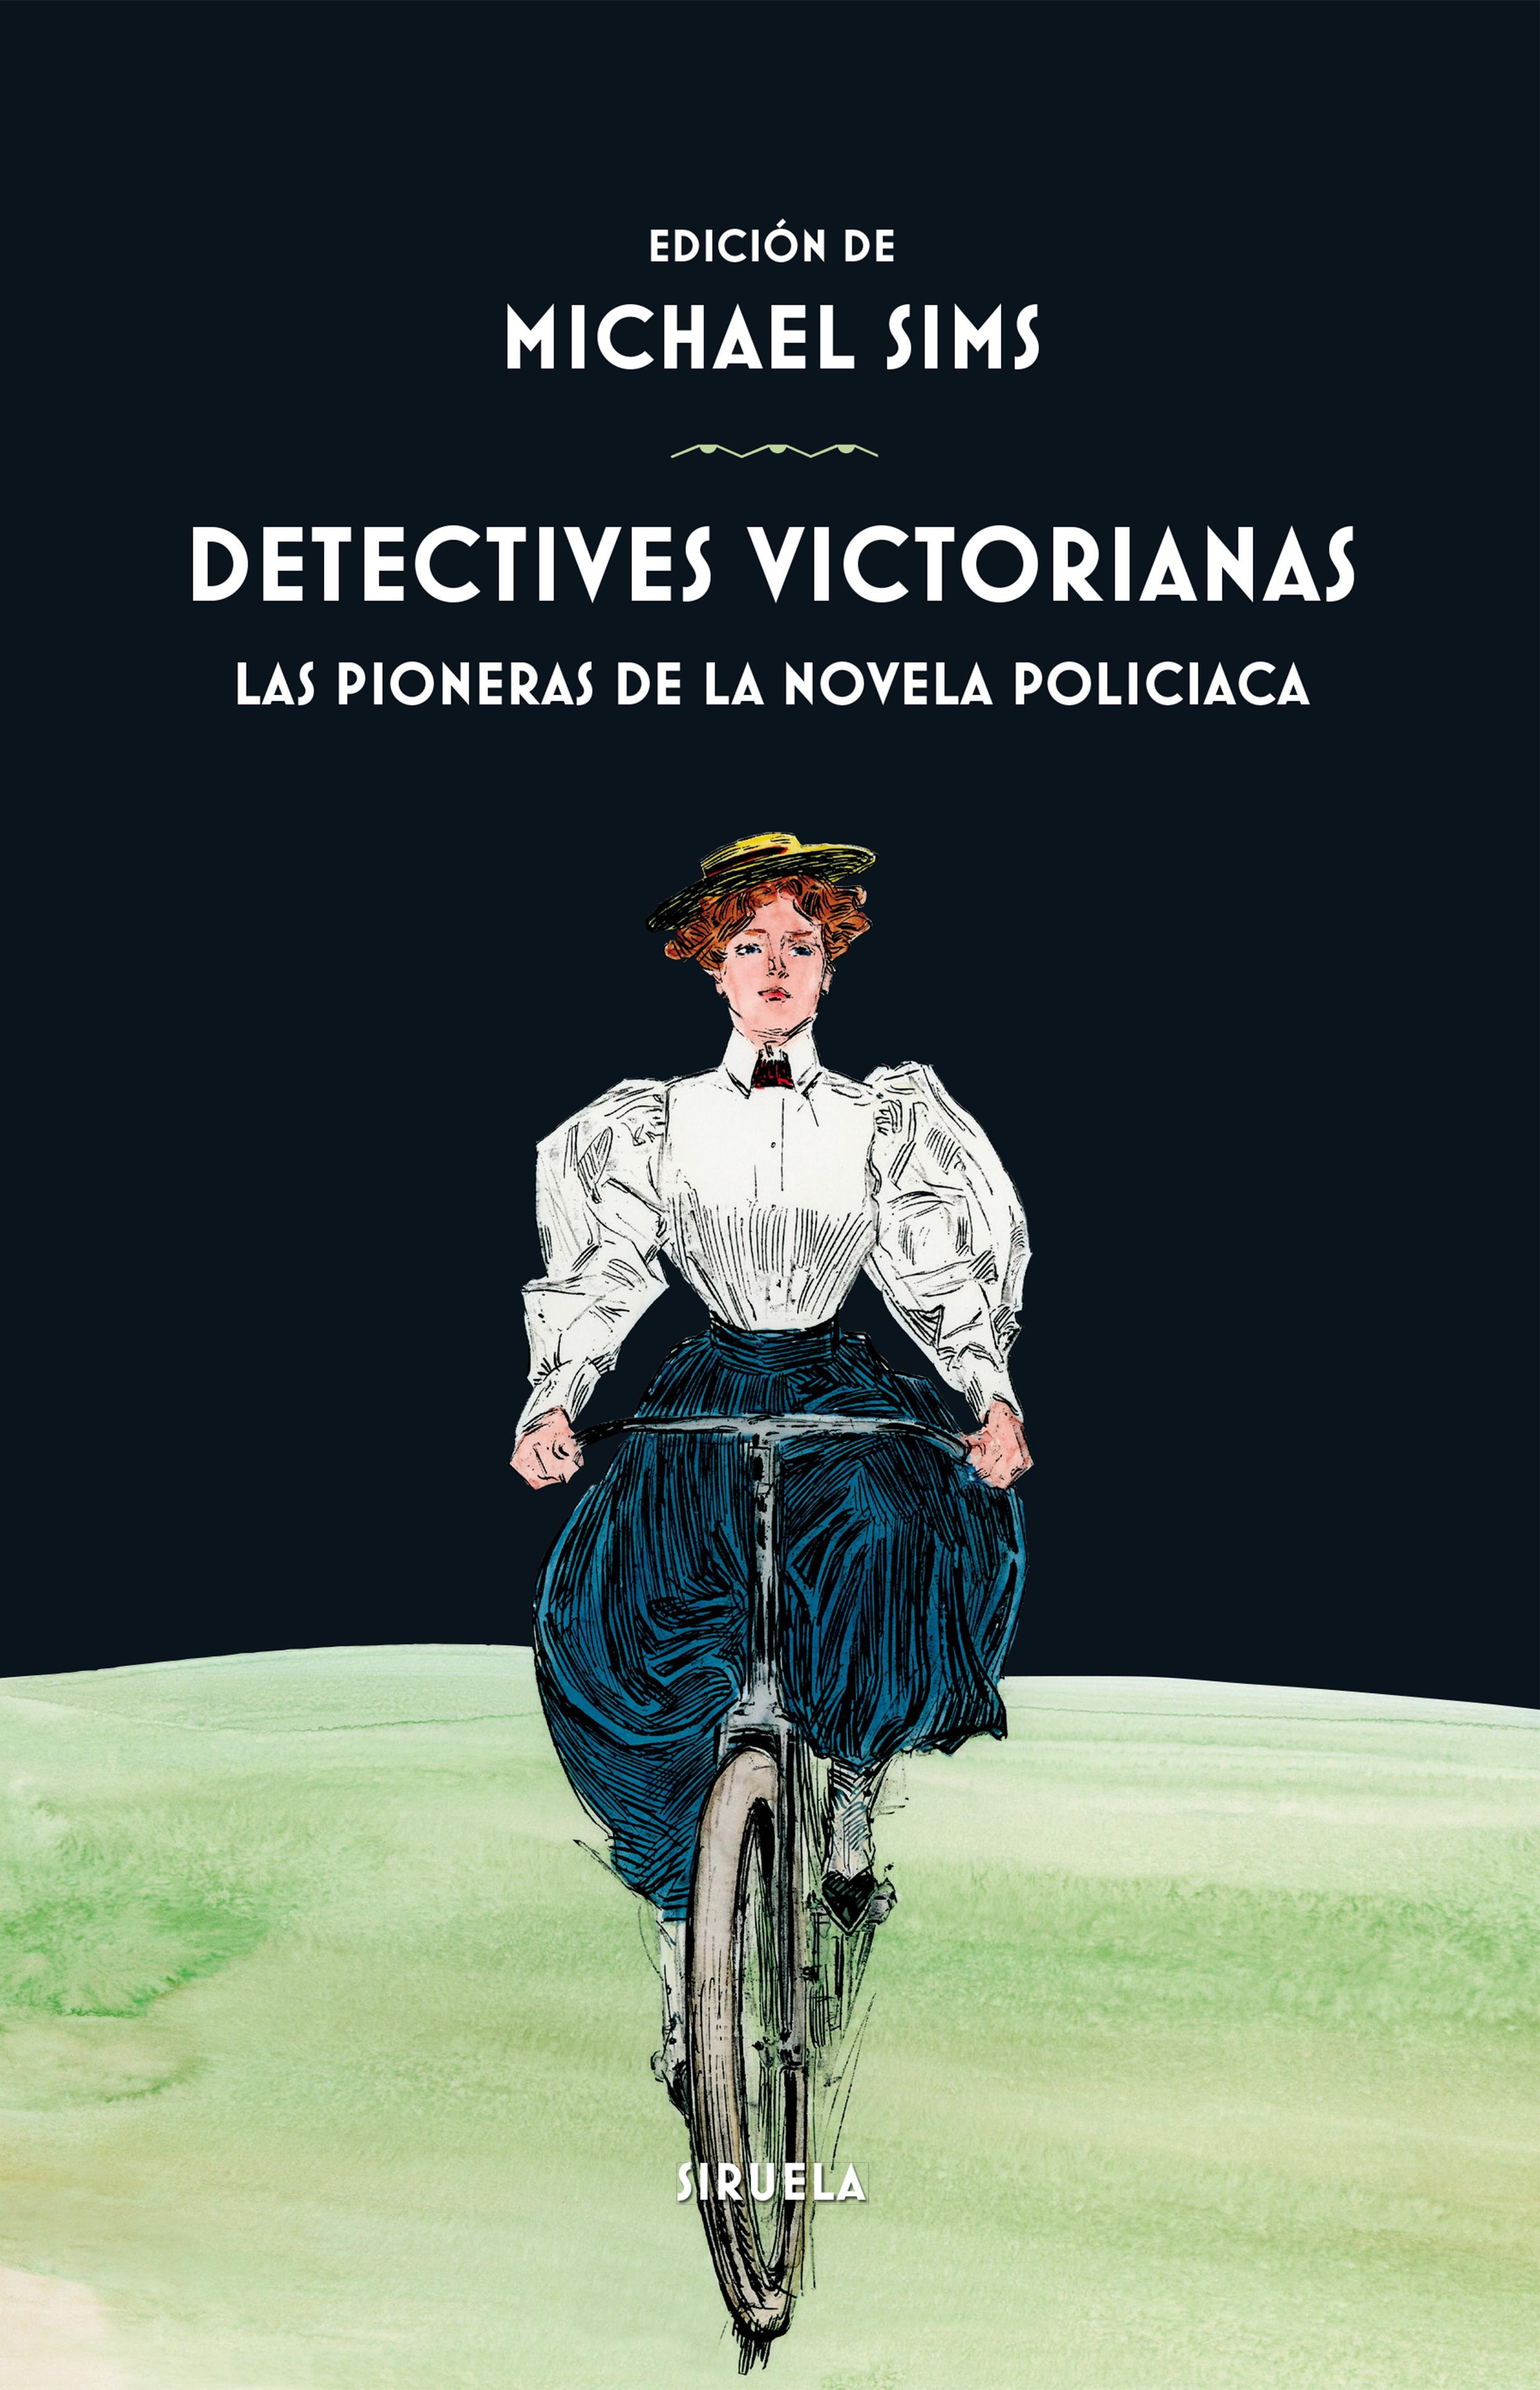 Detectives victorianas "Las pioneras de la novela policiaca"